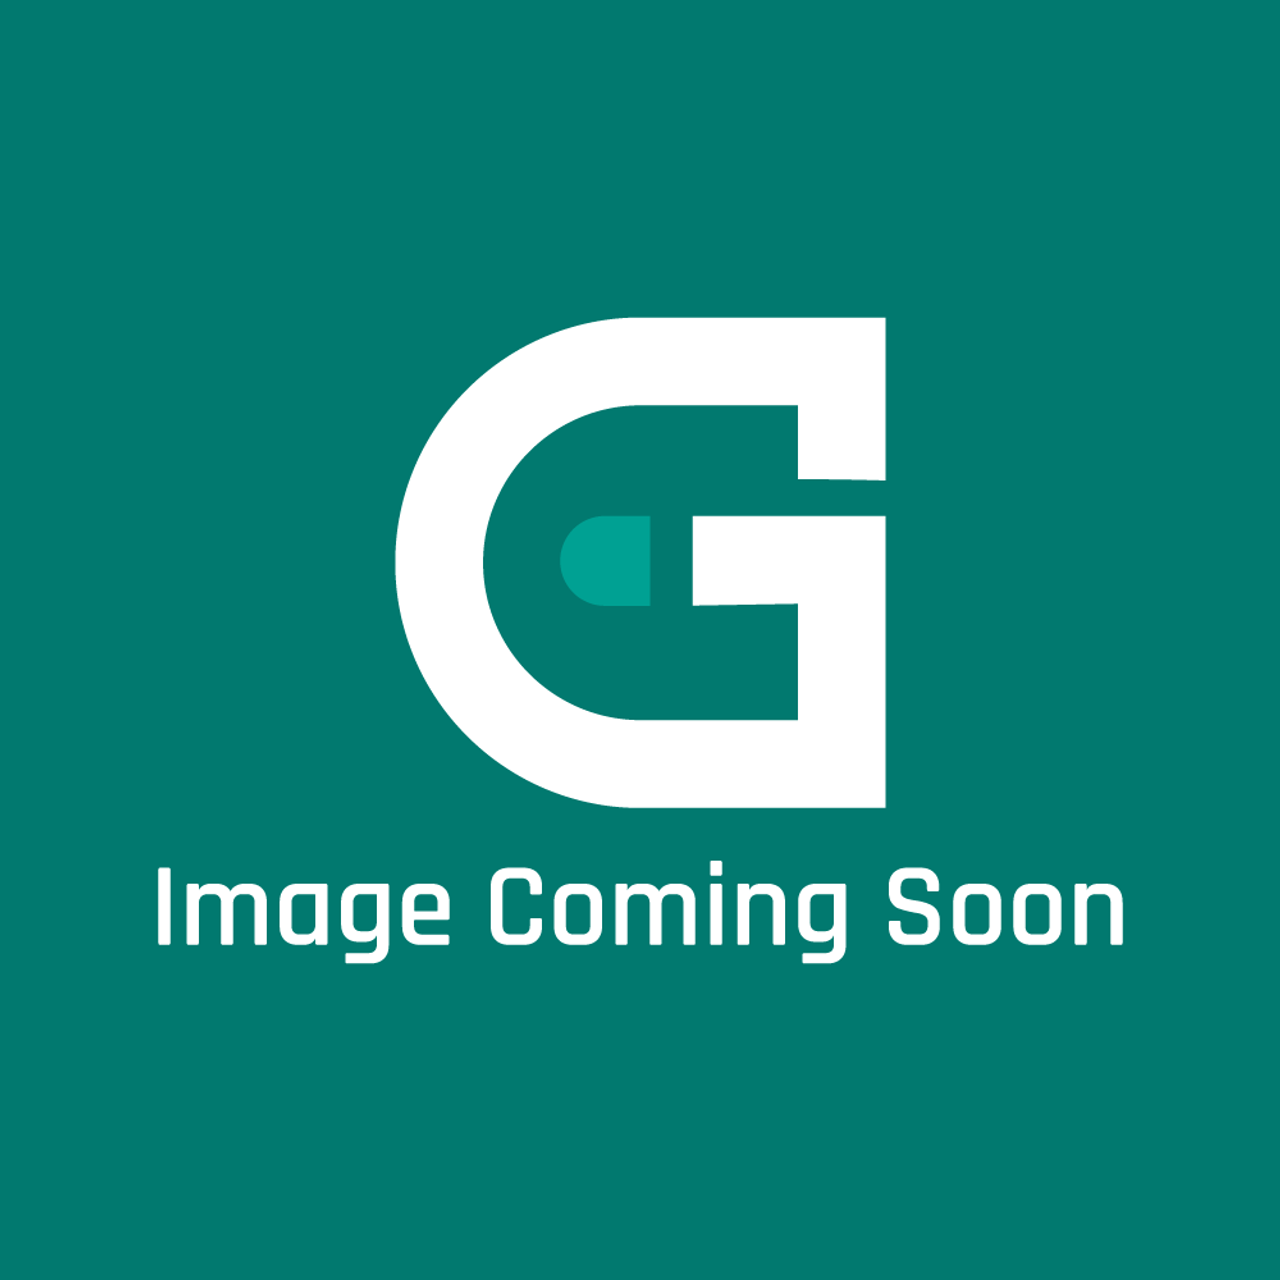 AGA Marvel R4118 - Silencer Assy Mx G/O T99-351R - Image Coming Soon!